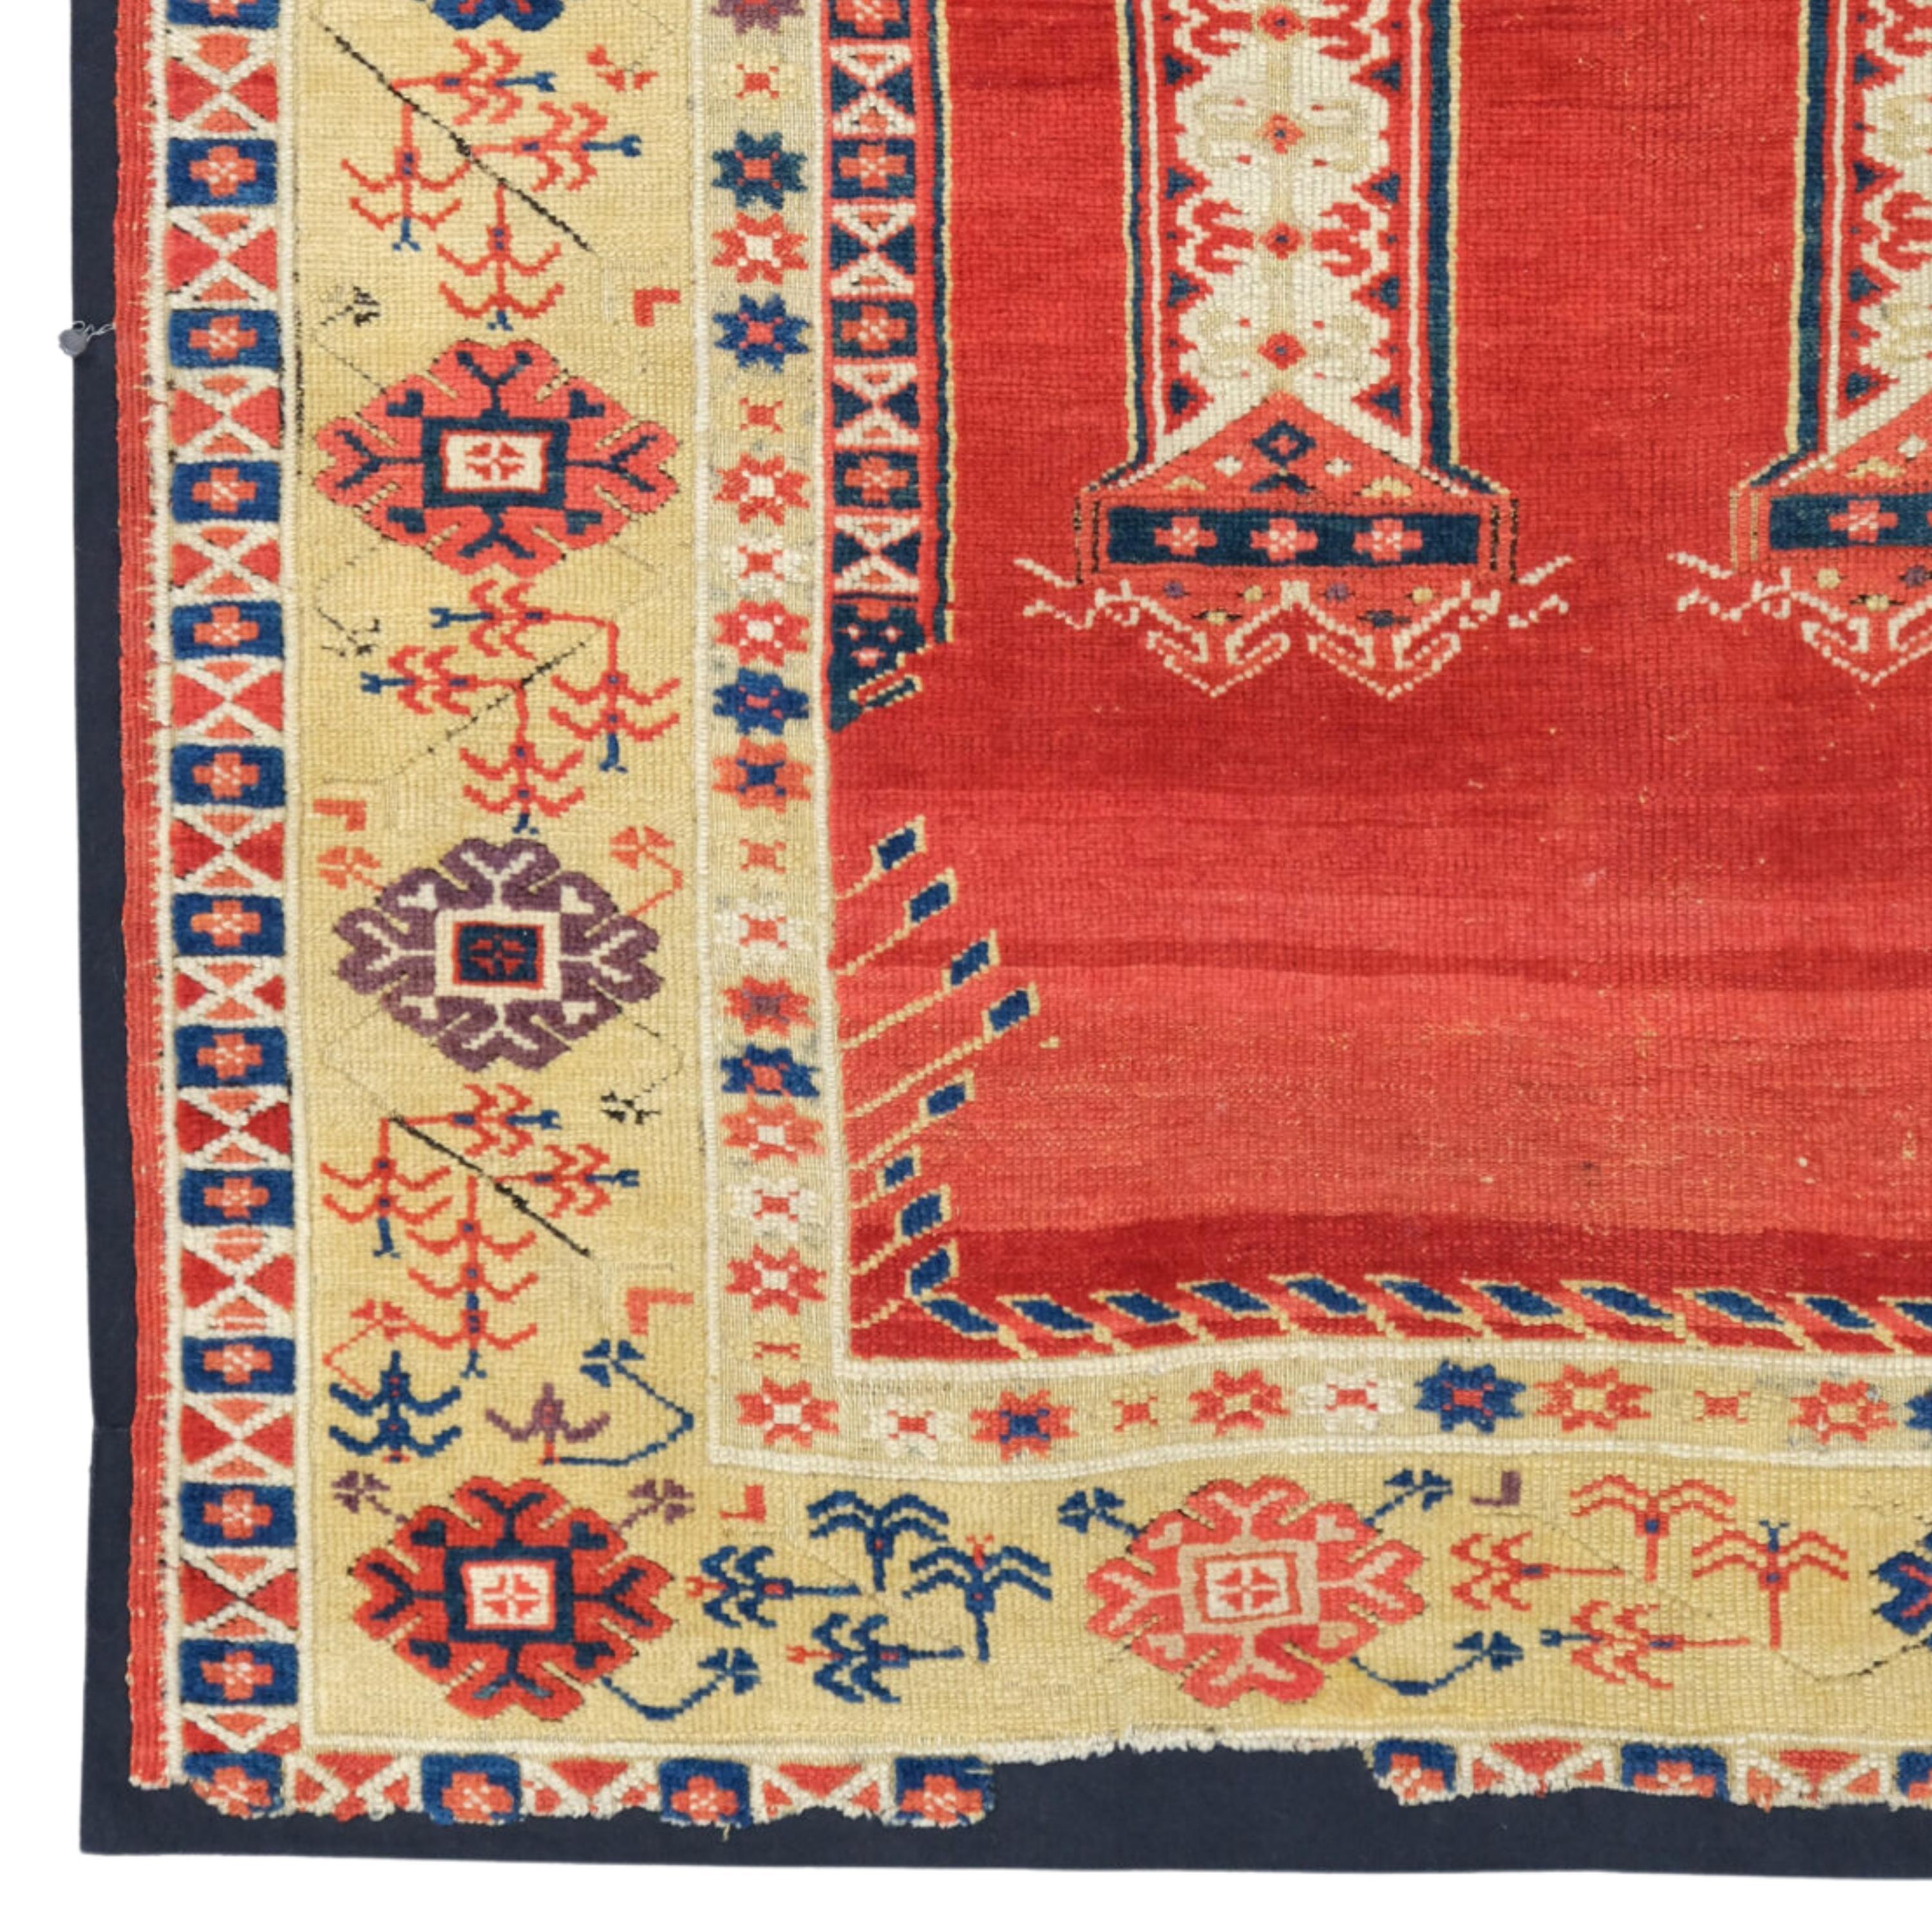 Antiker Konya Gebetsteppich  Anatolische Teppiche
Zentralanatolischer Konya-Gebetsteppich aus dem 18.
Größe: 115×133 cm (45,2x52,3 In)

In jüngerer Zeit werden in den Teppichen aus der Region Motive verwendet, die im ganzen Land verbreitet sind.